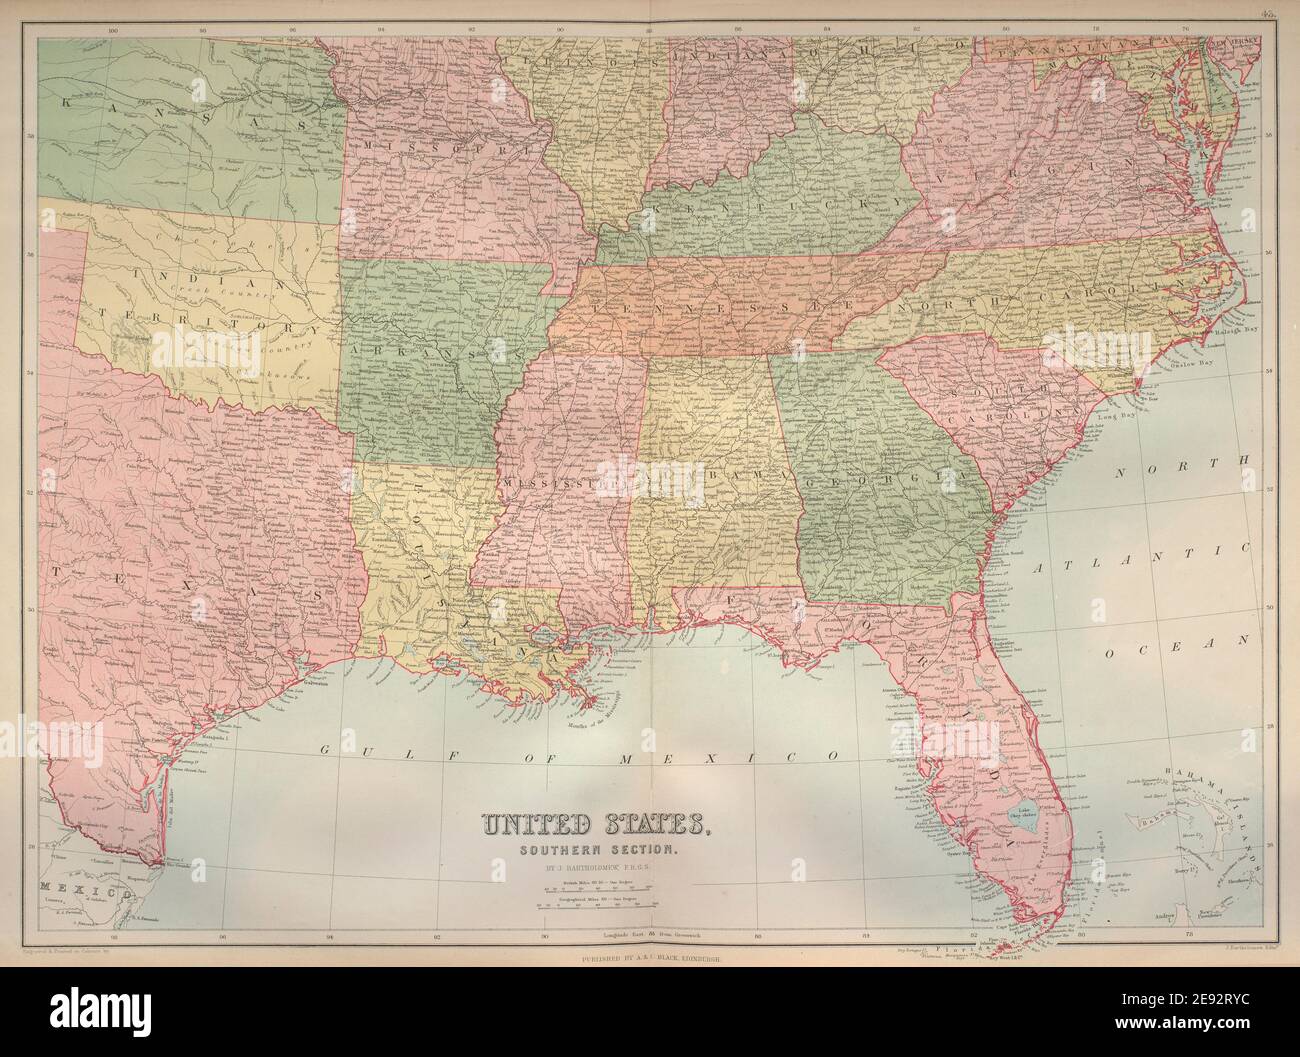 Im Süden Der Vereinigten Staaten. Golfküste der USA. Indian Territory. BARTHOLOMEW 1870 Karte Stockfoto